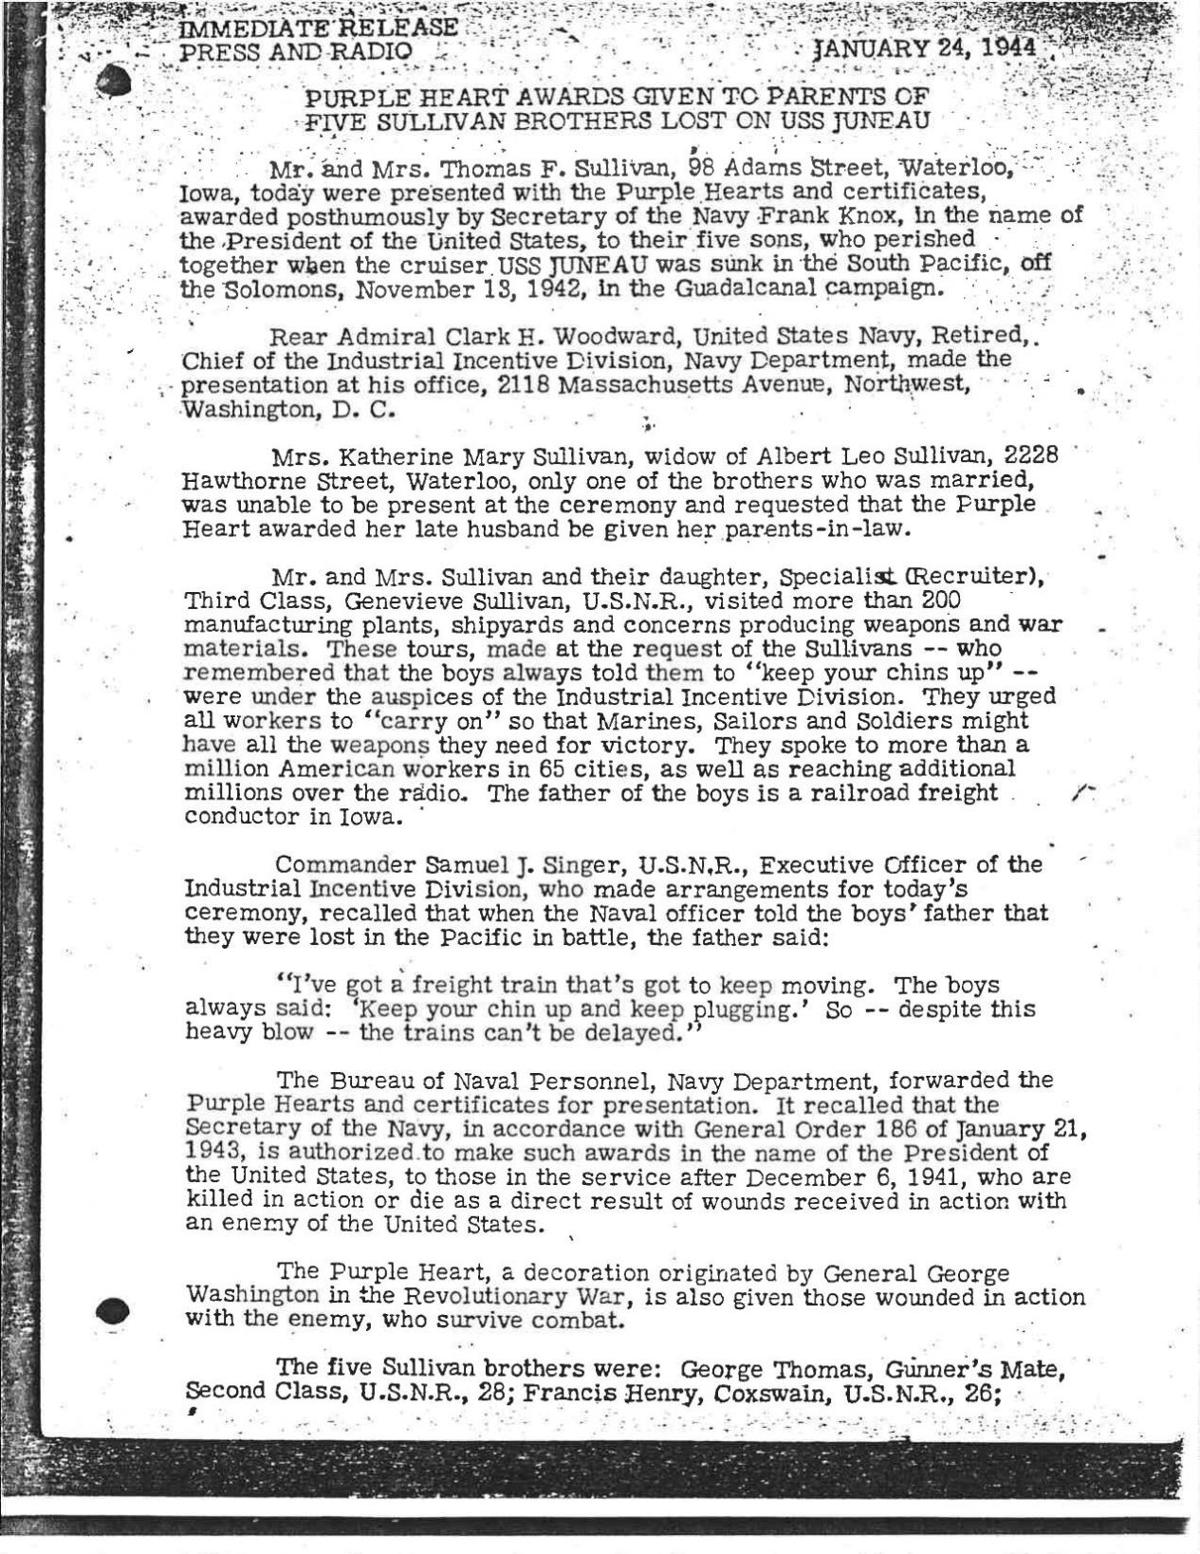 U.S. Navy Sullivan Purple Hearts document Jan. 24, 1944